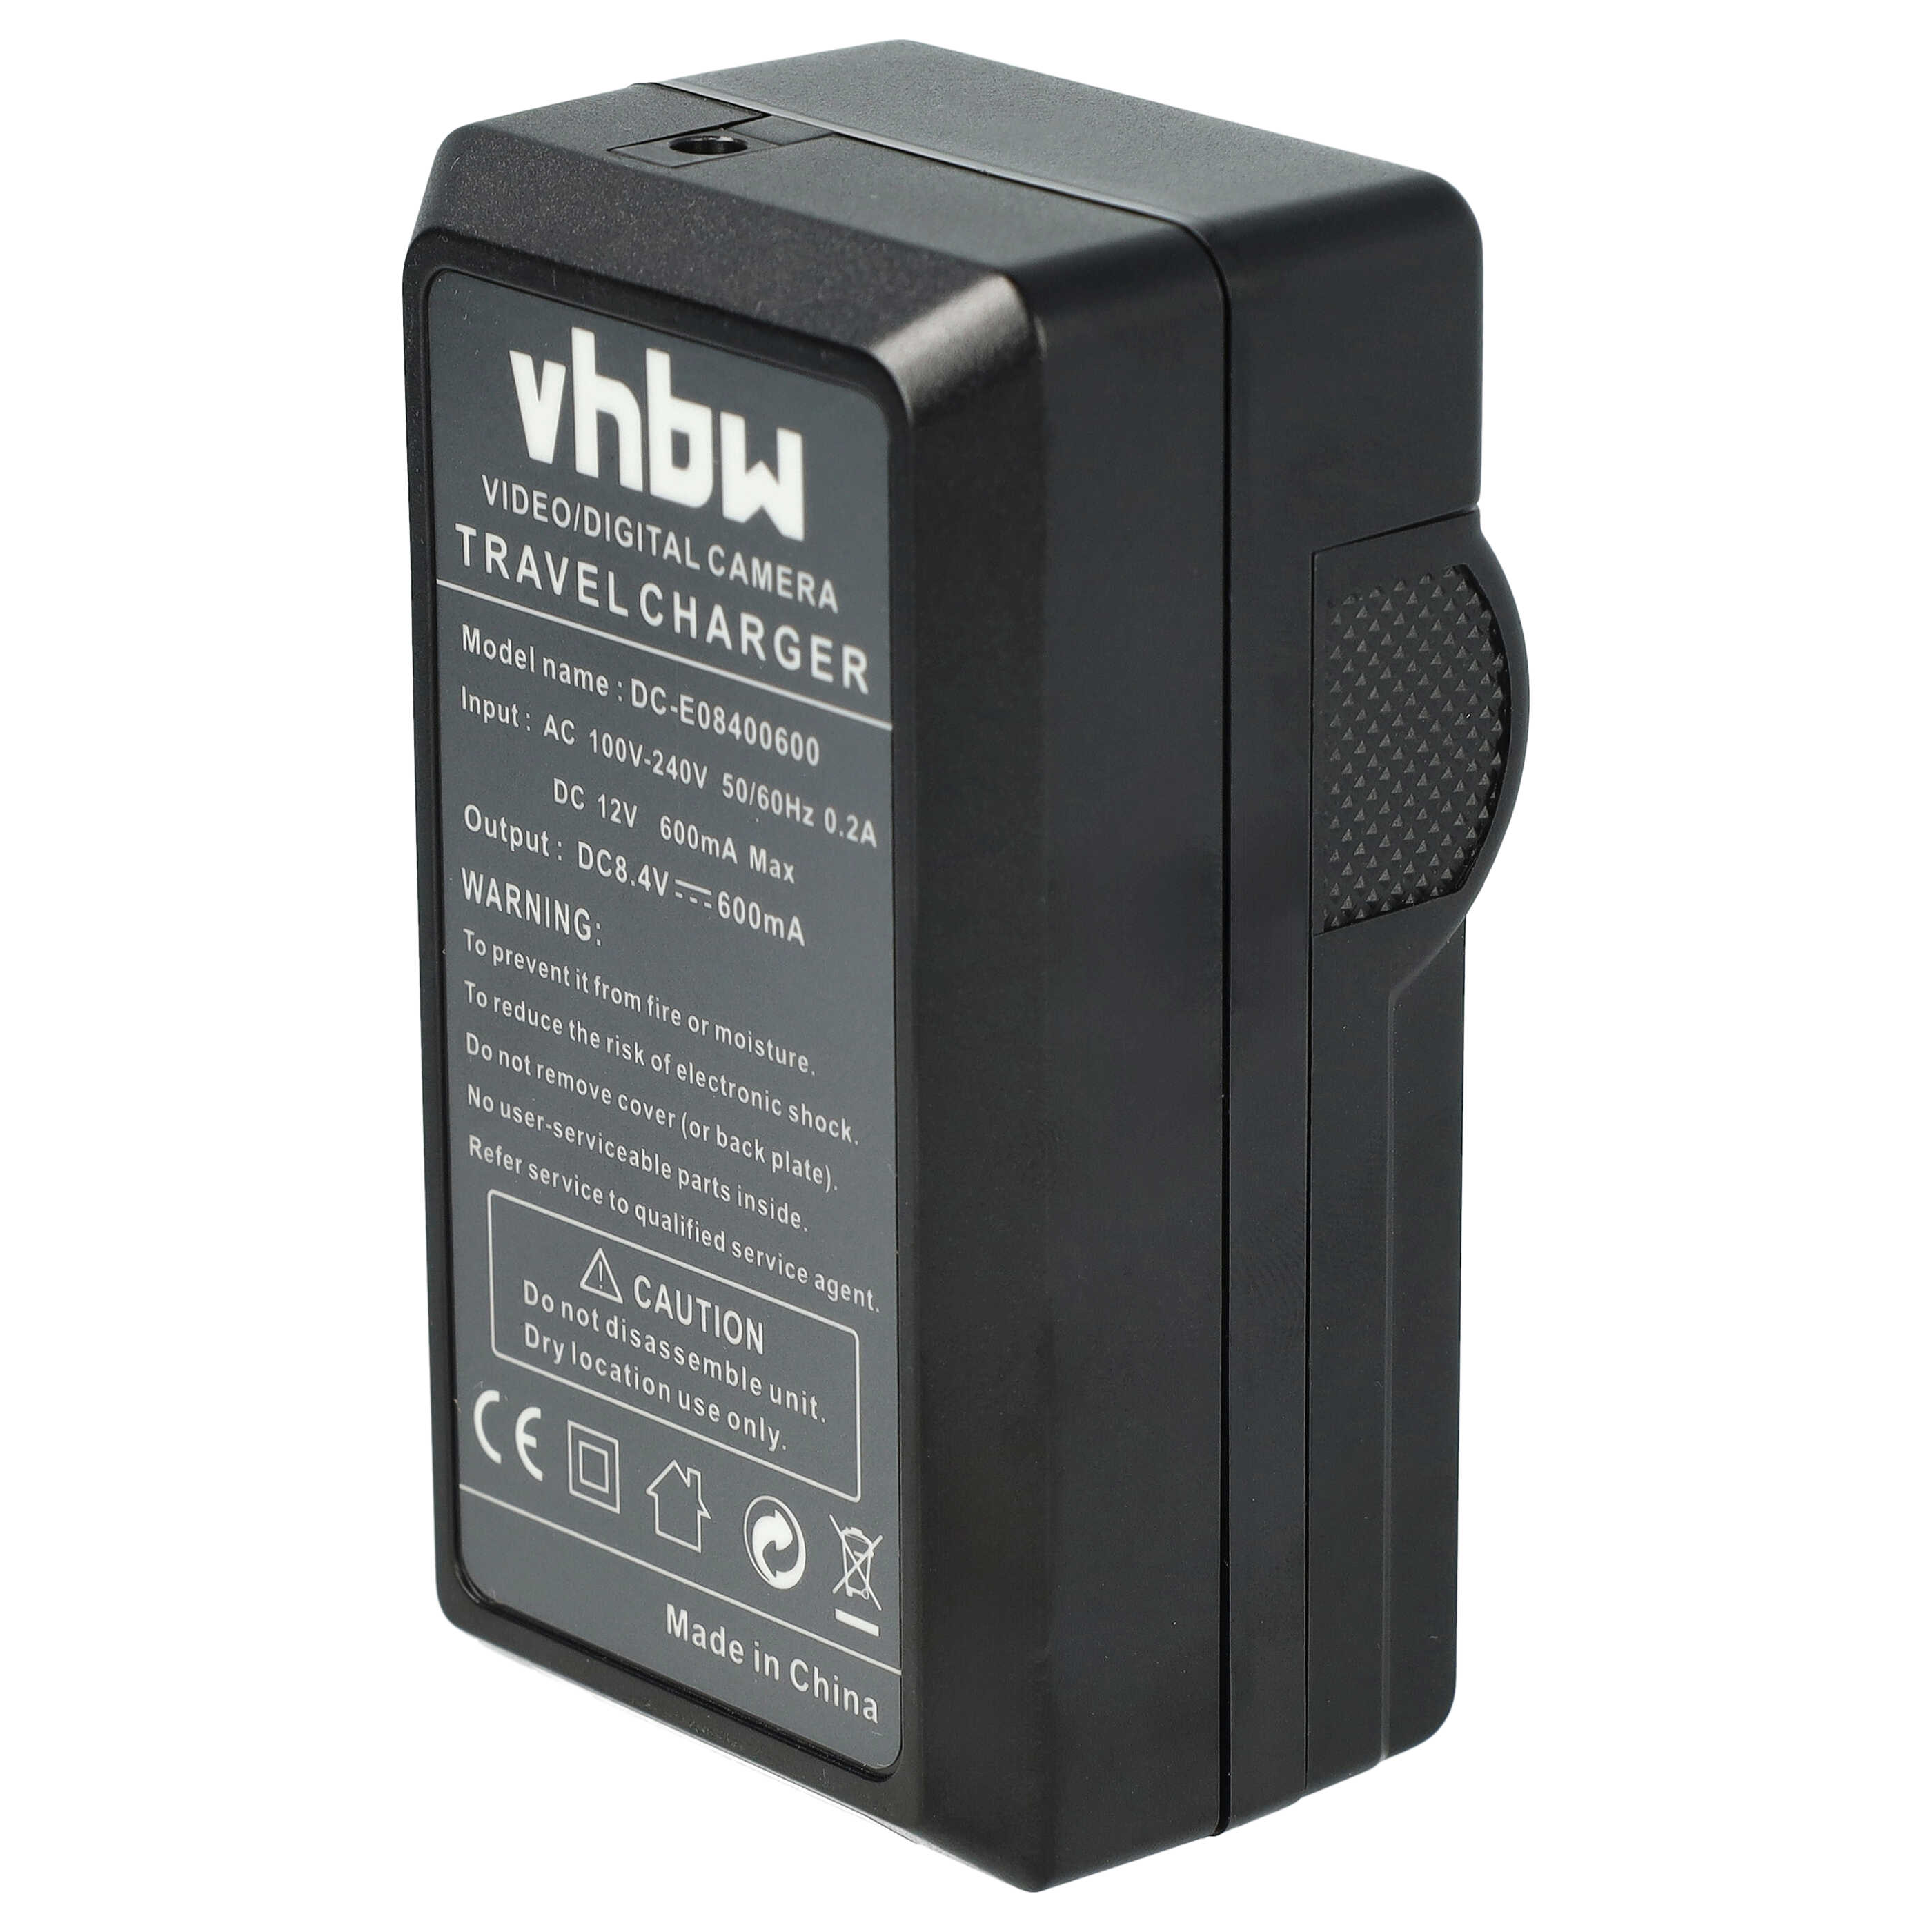 Caricabatterie + adattatore da auto per fotocamera Lumix - 0,6A 8,4V 88,5cm